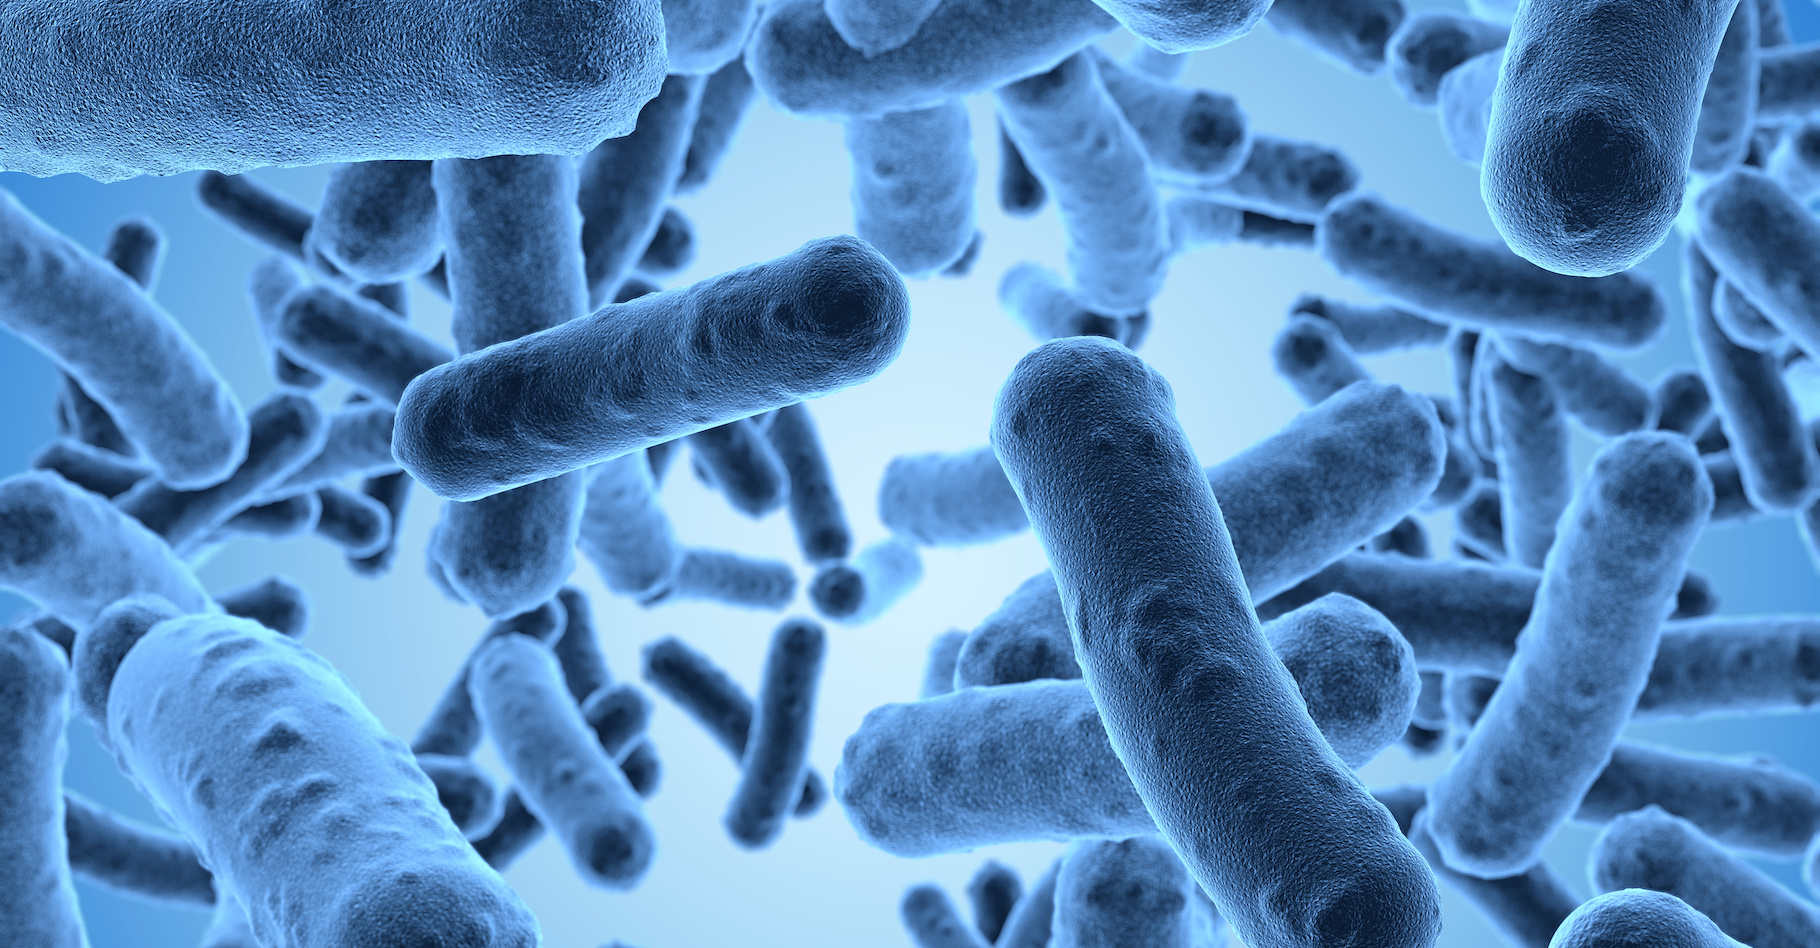 Les bacilles, des bactéries en forme de bâtonnets peuvent être très pathogène pour l'homme© beawolf, Adobe Stock